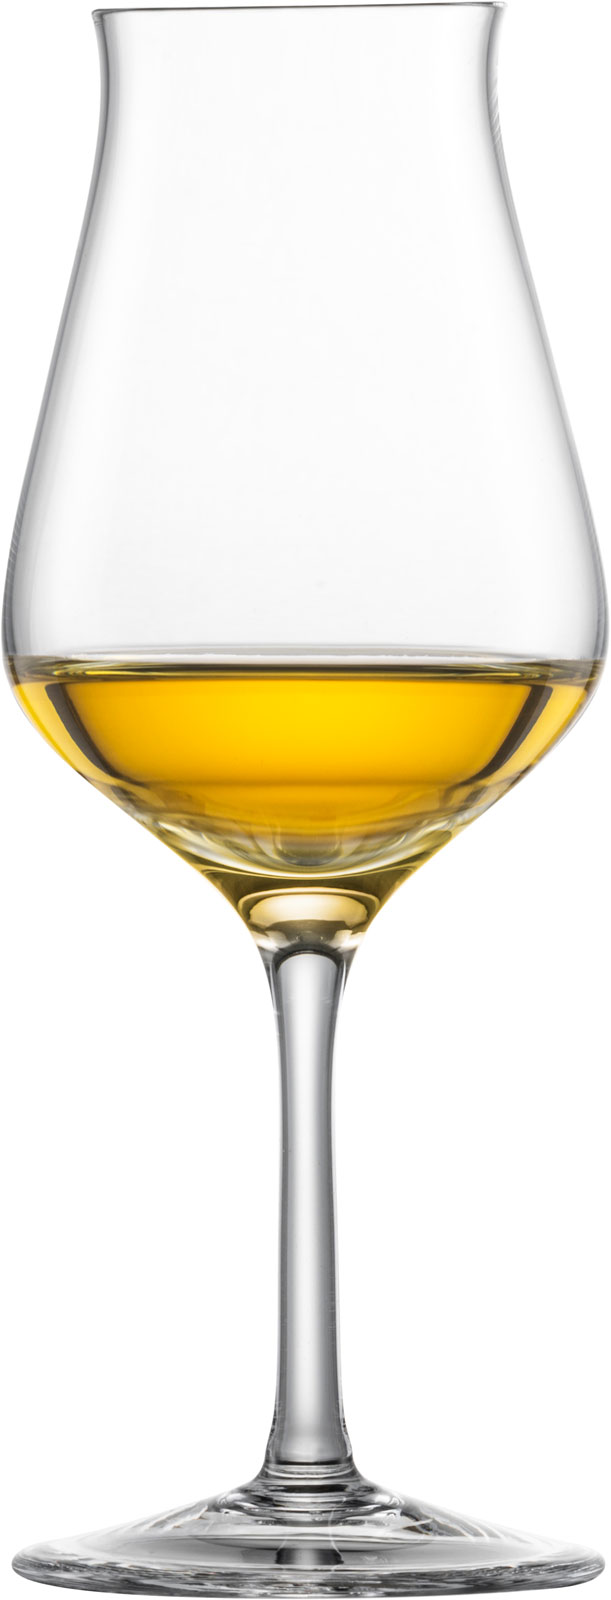 Eisch Jeunesse Malt-Whisky 514/213